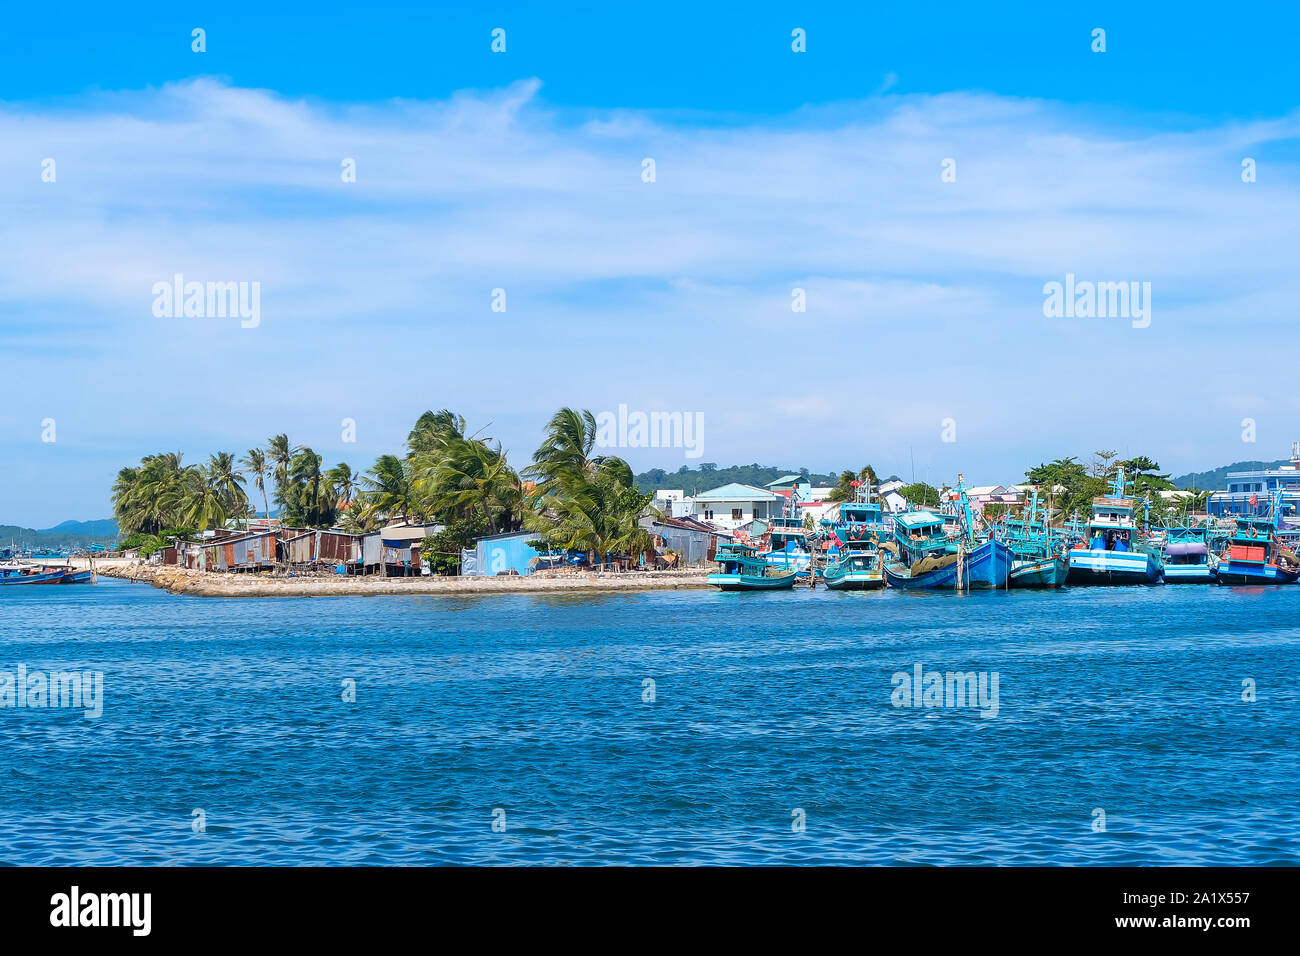 Landschaft von kleinen Dorf in Seashore Phu Quoc, Kien Giang, Vietnam. Royalty Free Stock Bild in hoher Qualität von Meer Landschaft. Stockfoto